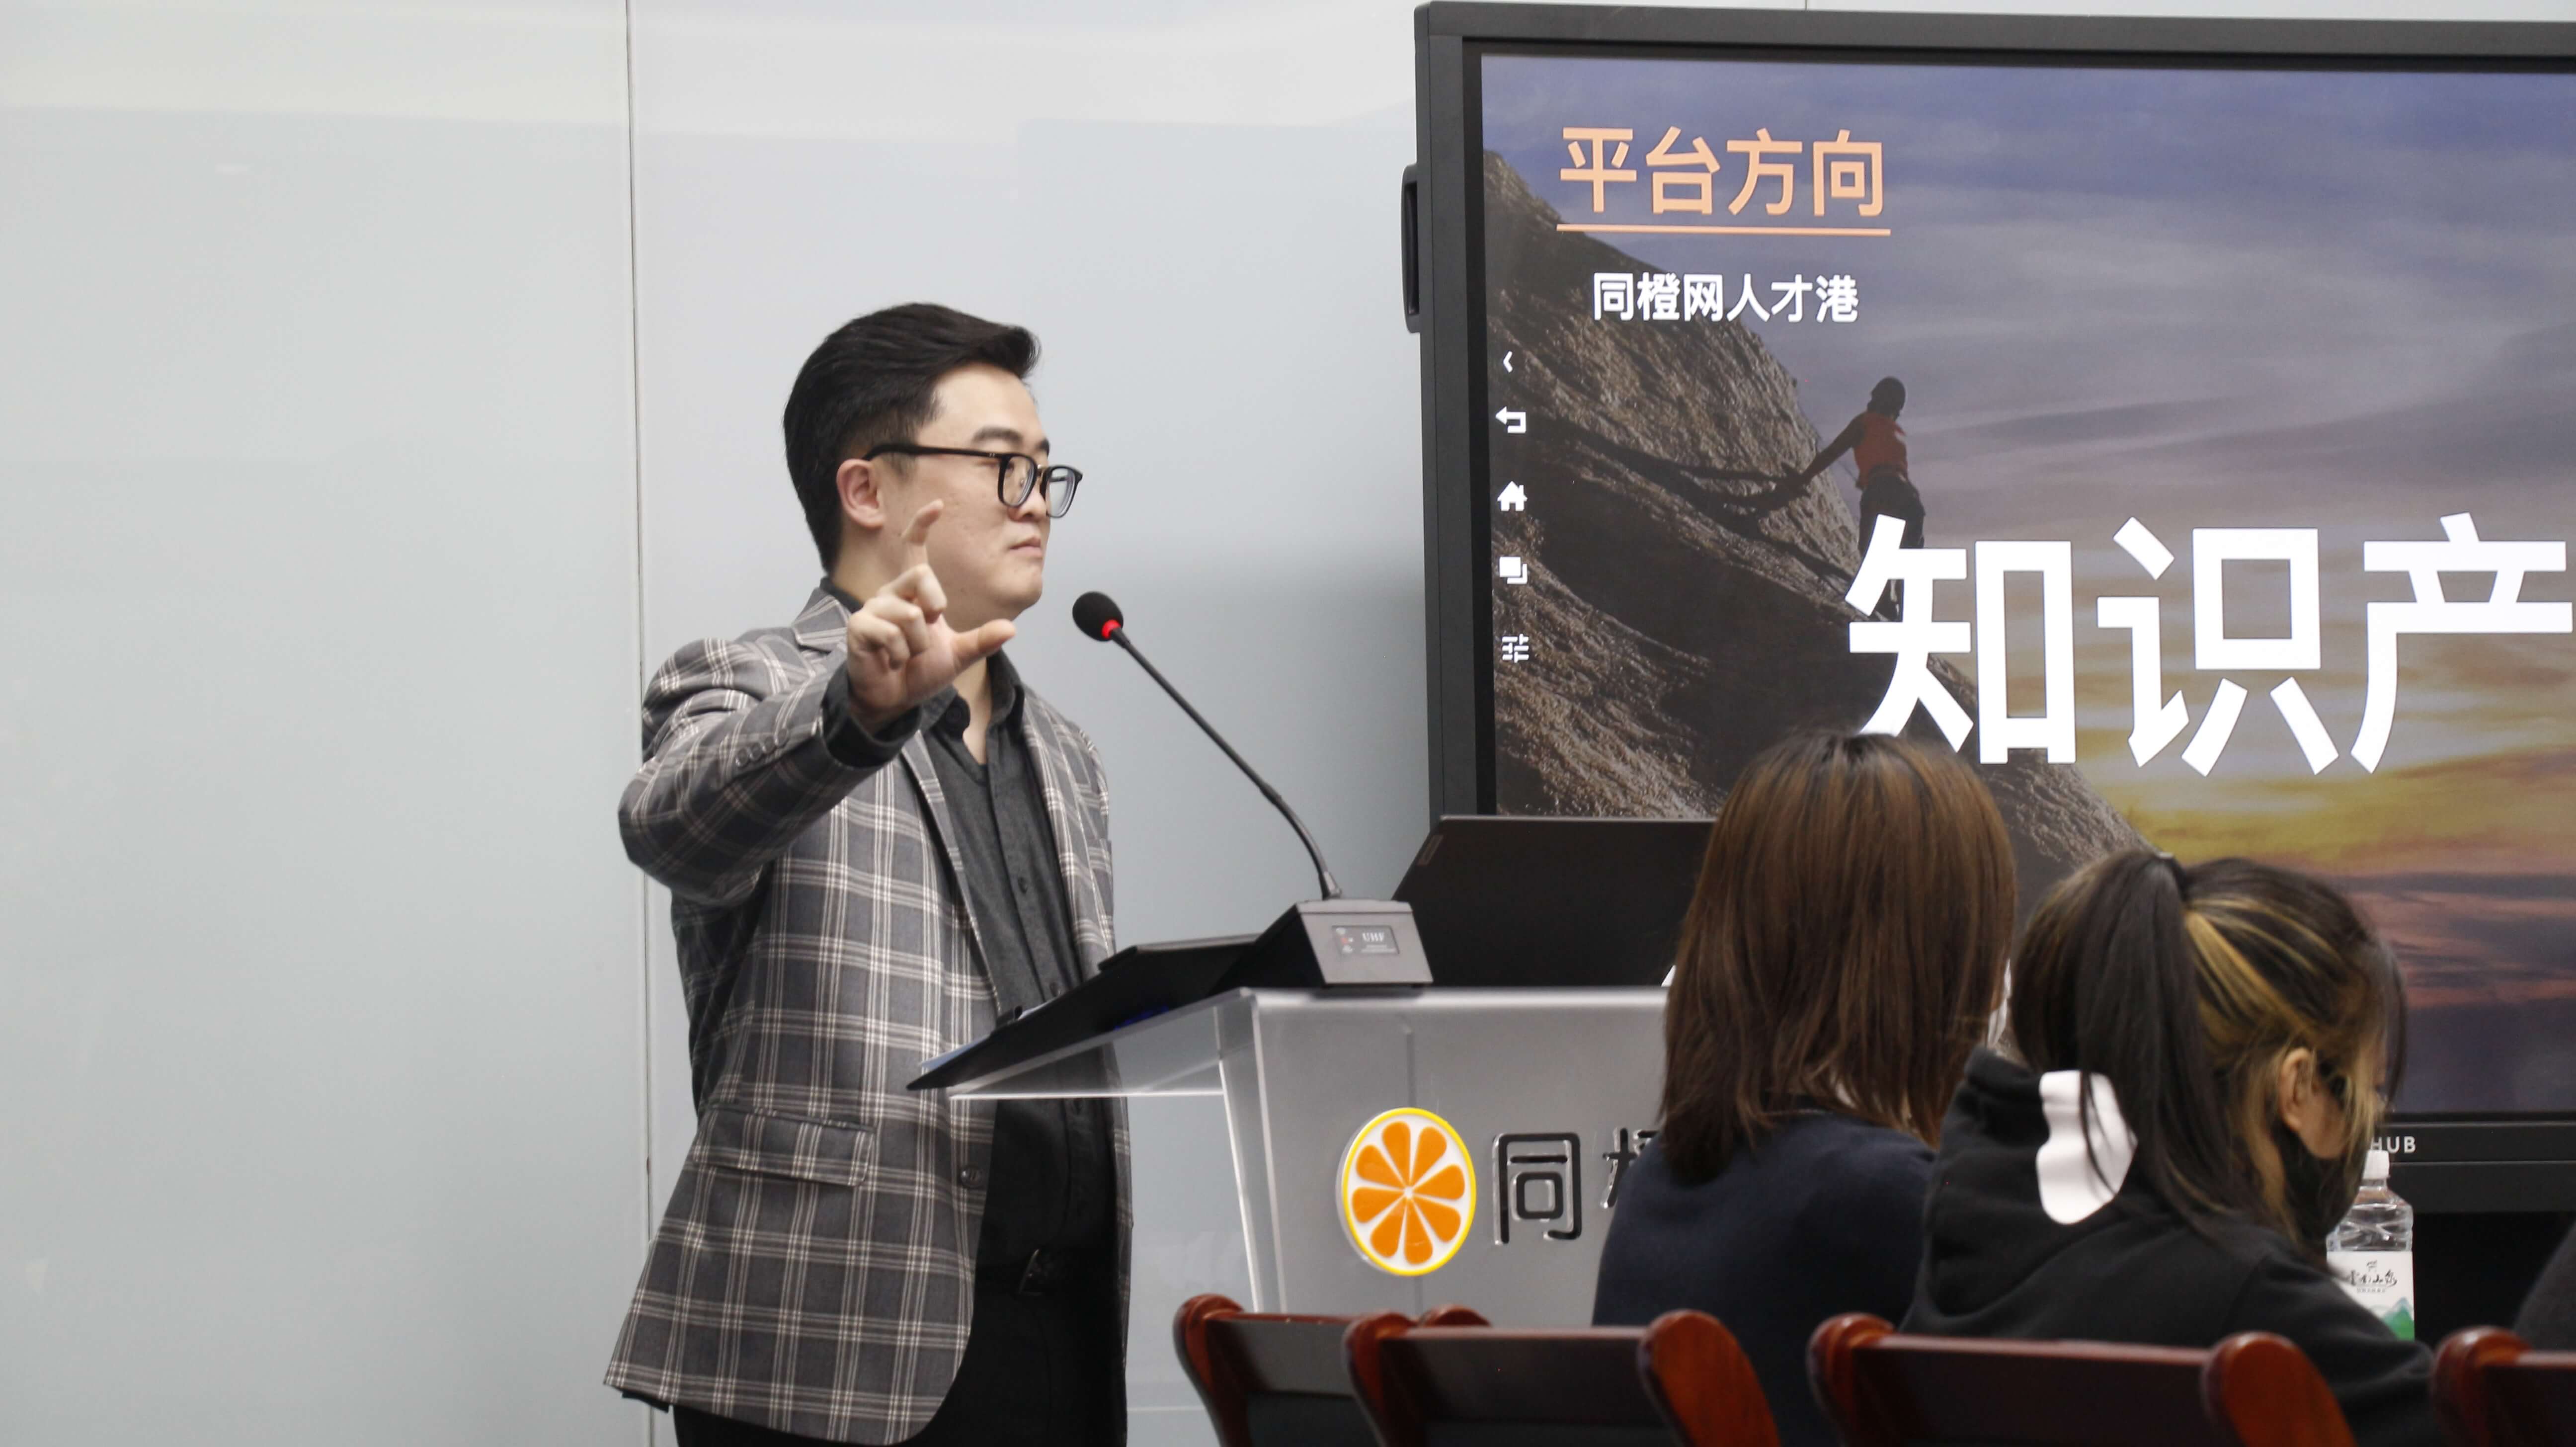 江苏同橙科技总经理吕小龙关于知识产权营销与生产的培训